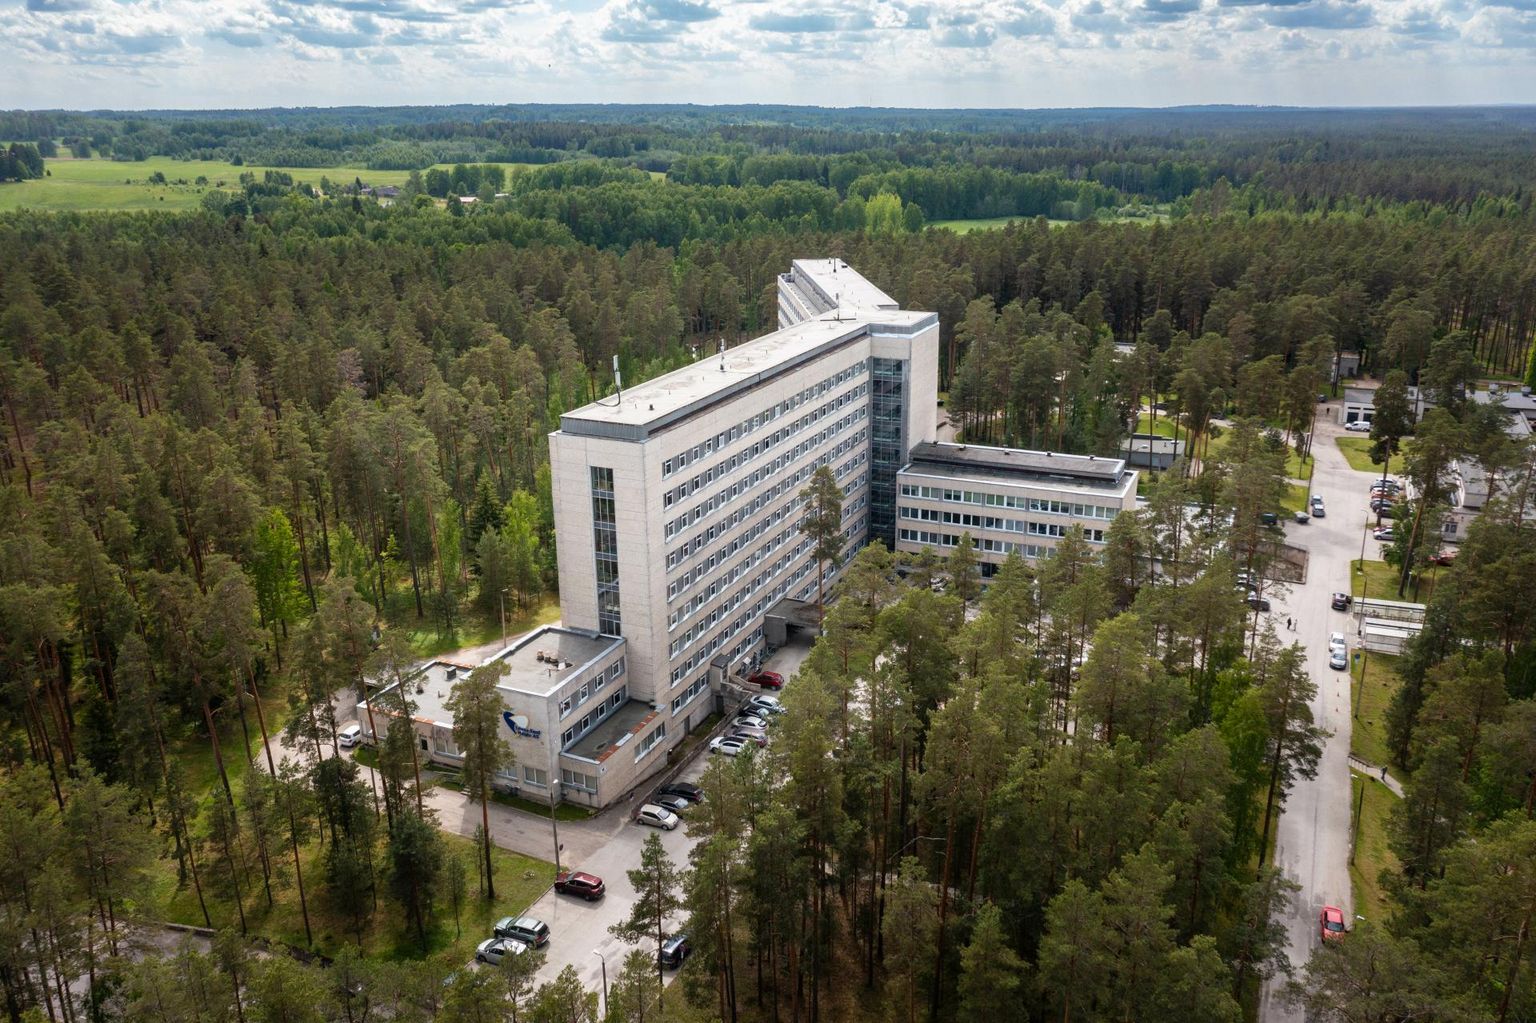 Kaks sõdurit viidi kontrolliks ja kergema arstiabi andmiseks Lõuna-Eesti haigla EMO-sse.